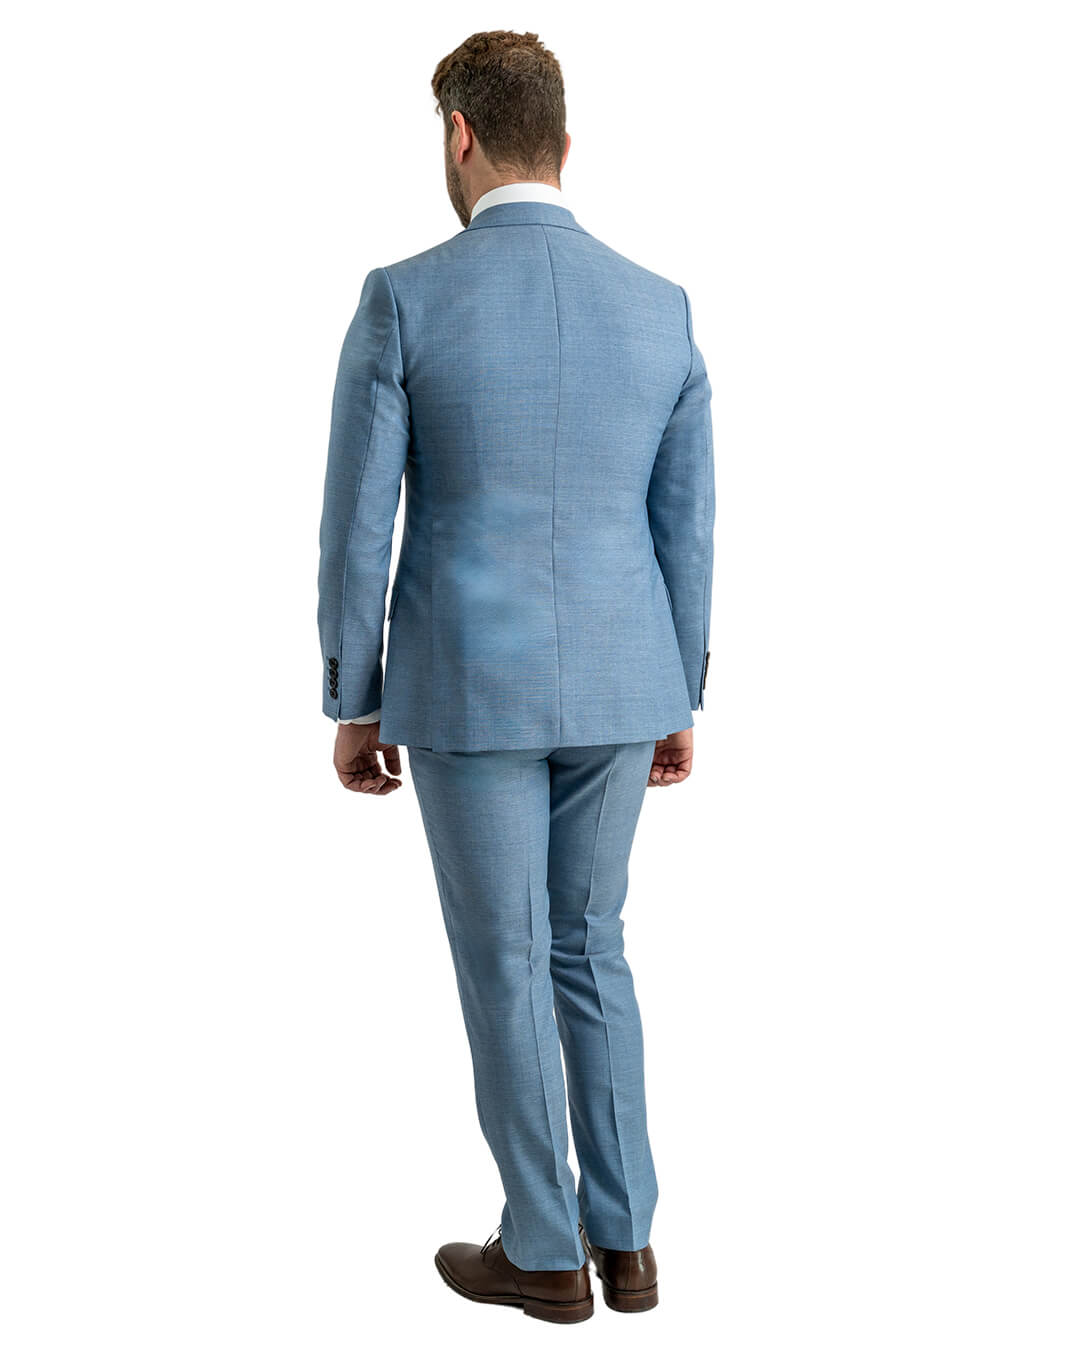 Sky Vitale Barberis Canonico Rustic Tropical Suit